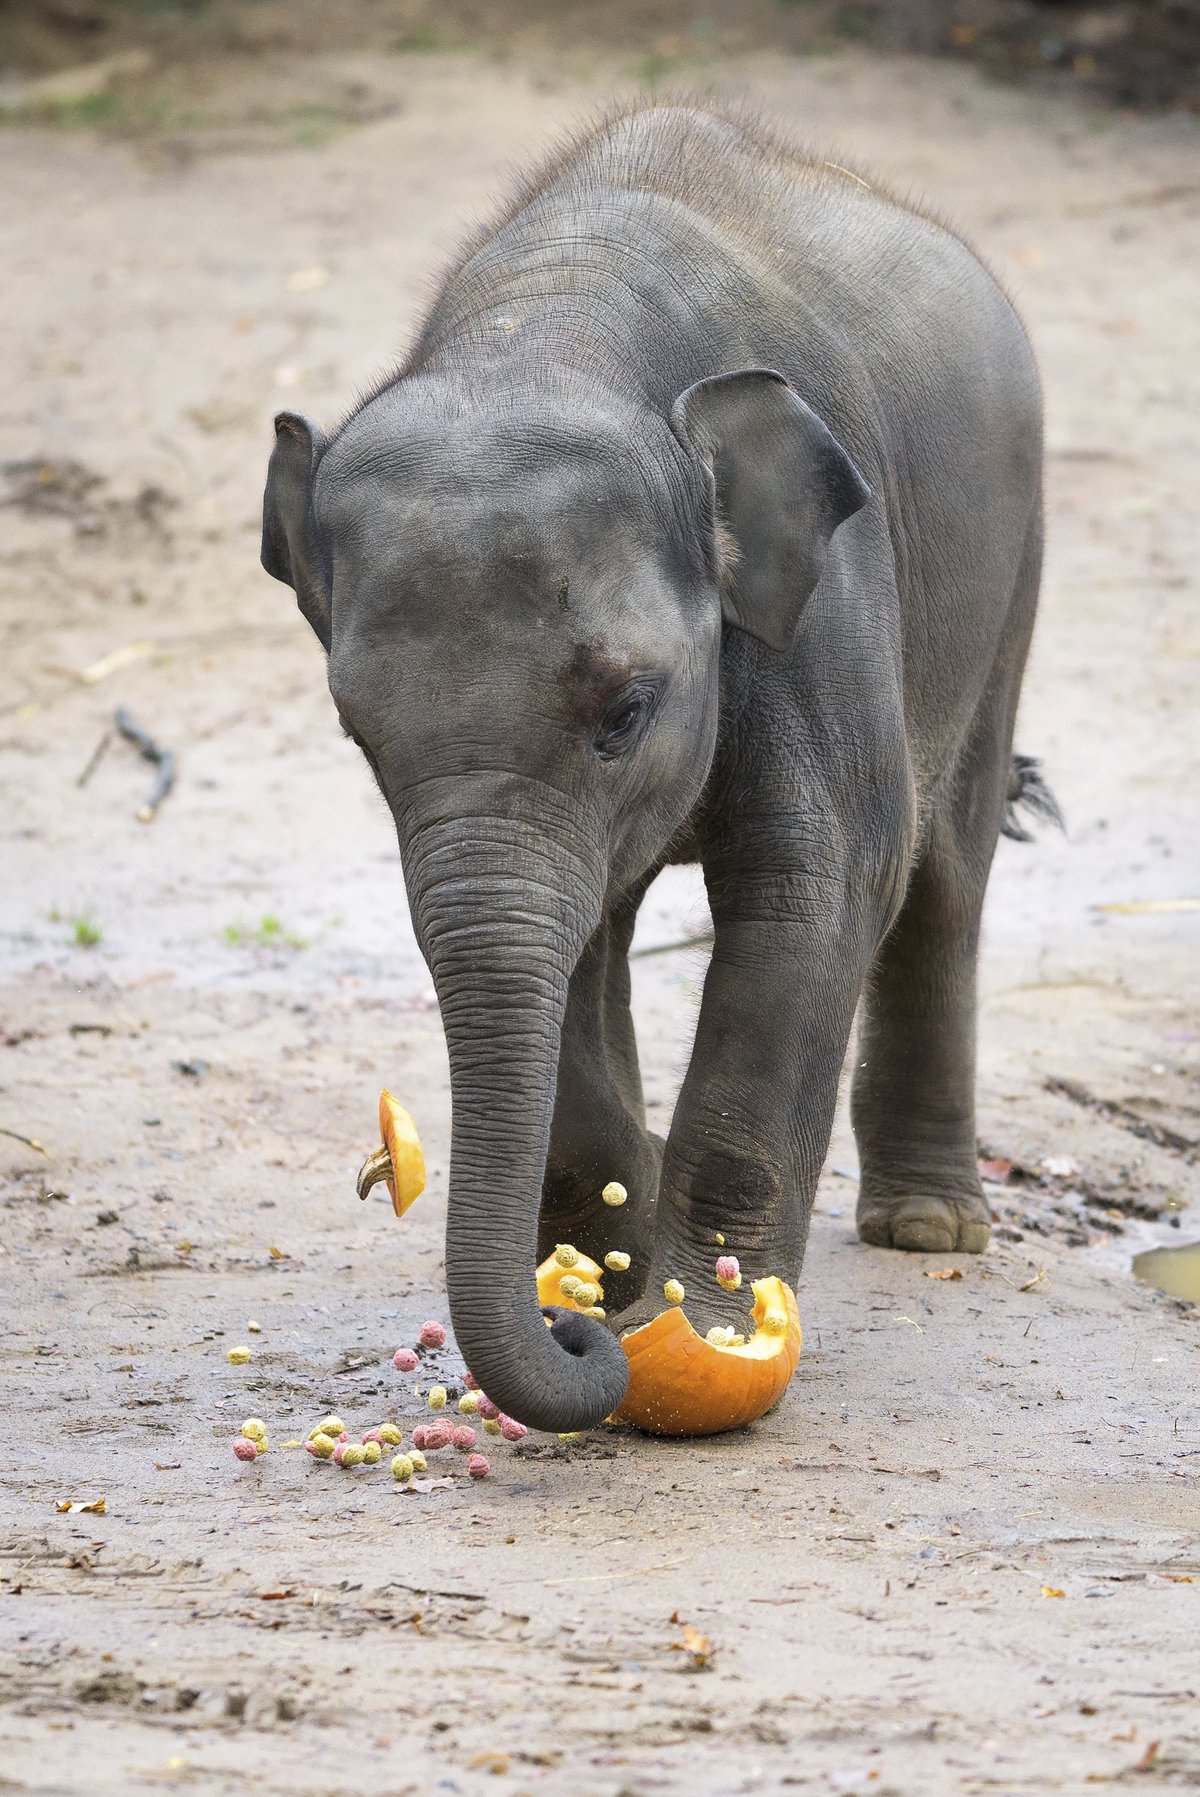 Slon v dýních: Tak takhle nějak se chová slon v porcelánu. Dup, je naporcováno a může se jíst.